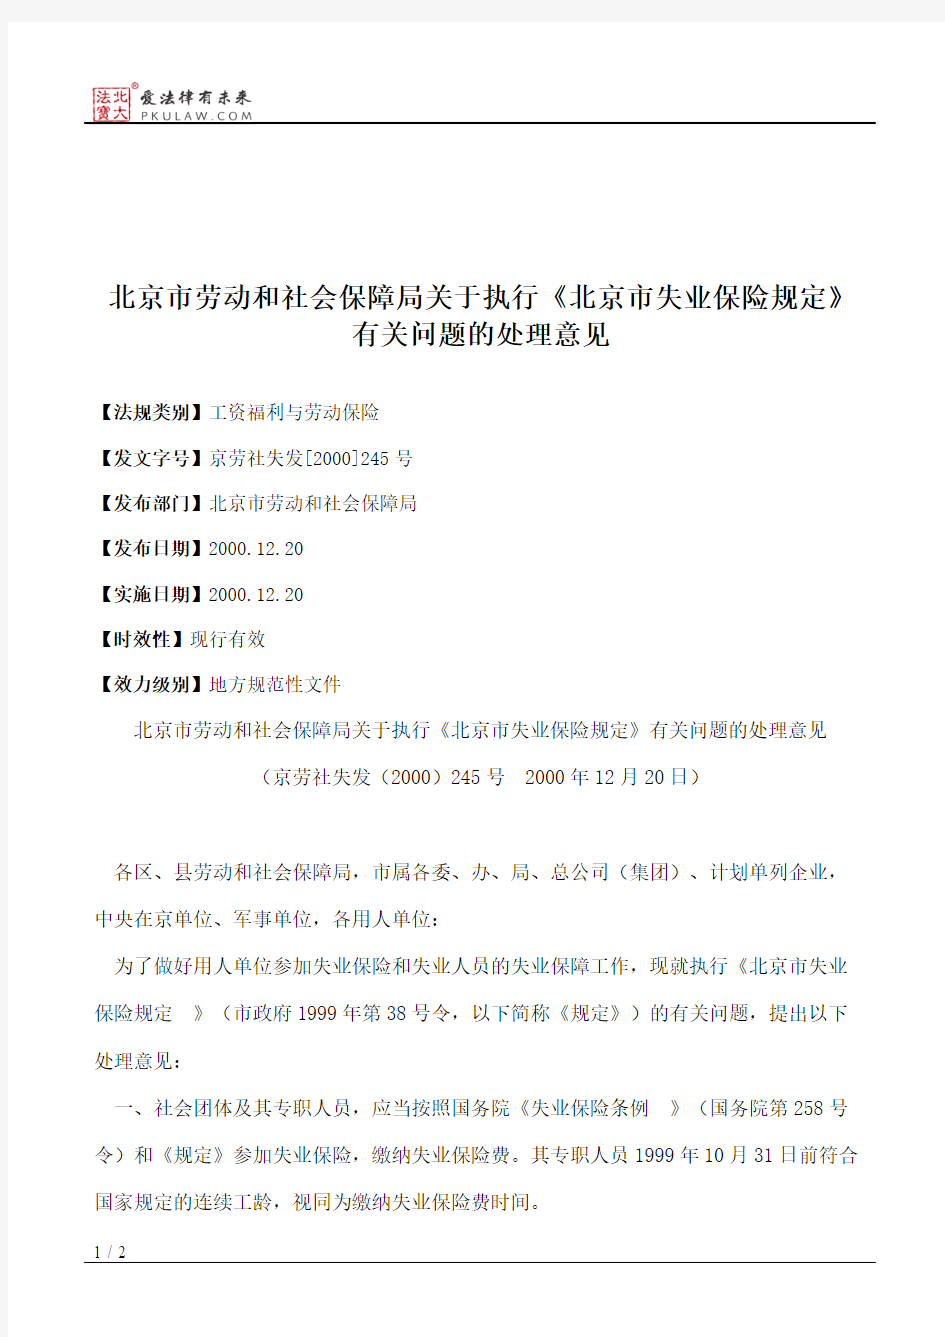 北京市劳动和社会保障局关于执行《北京市失业保险规定》有关问题